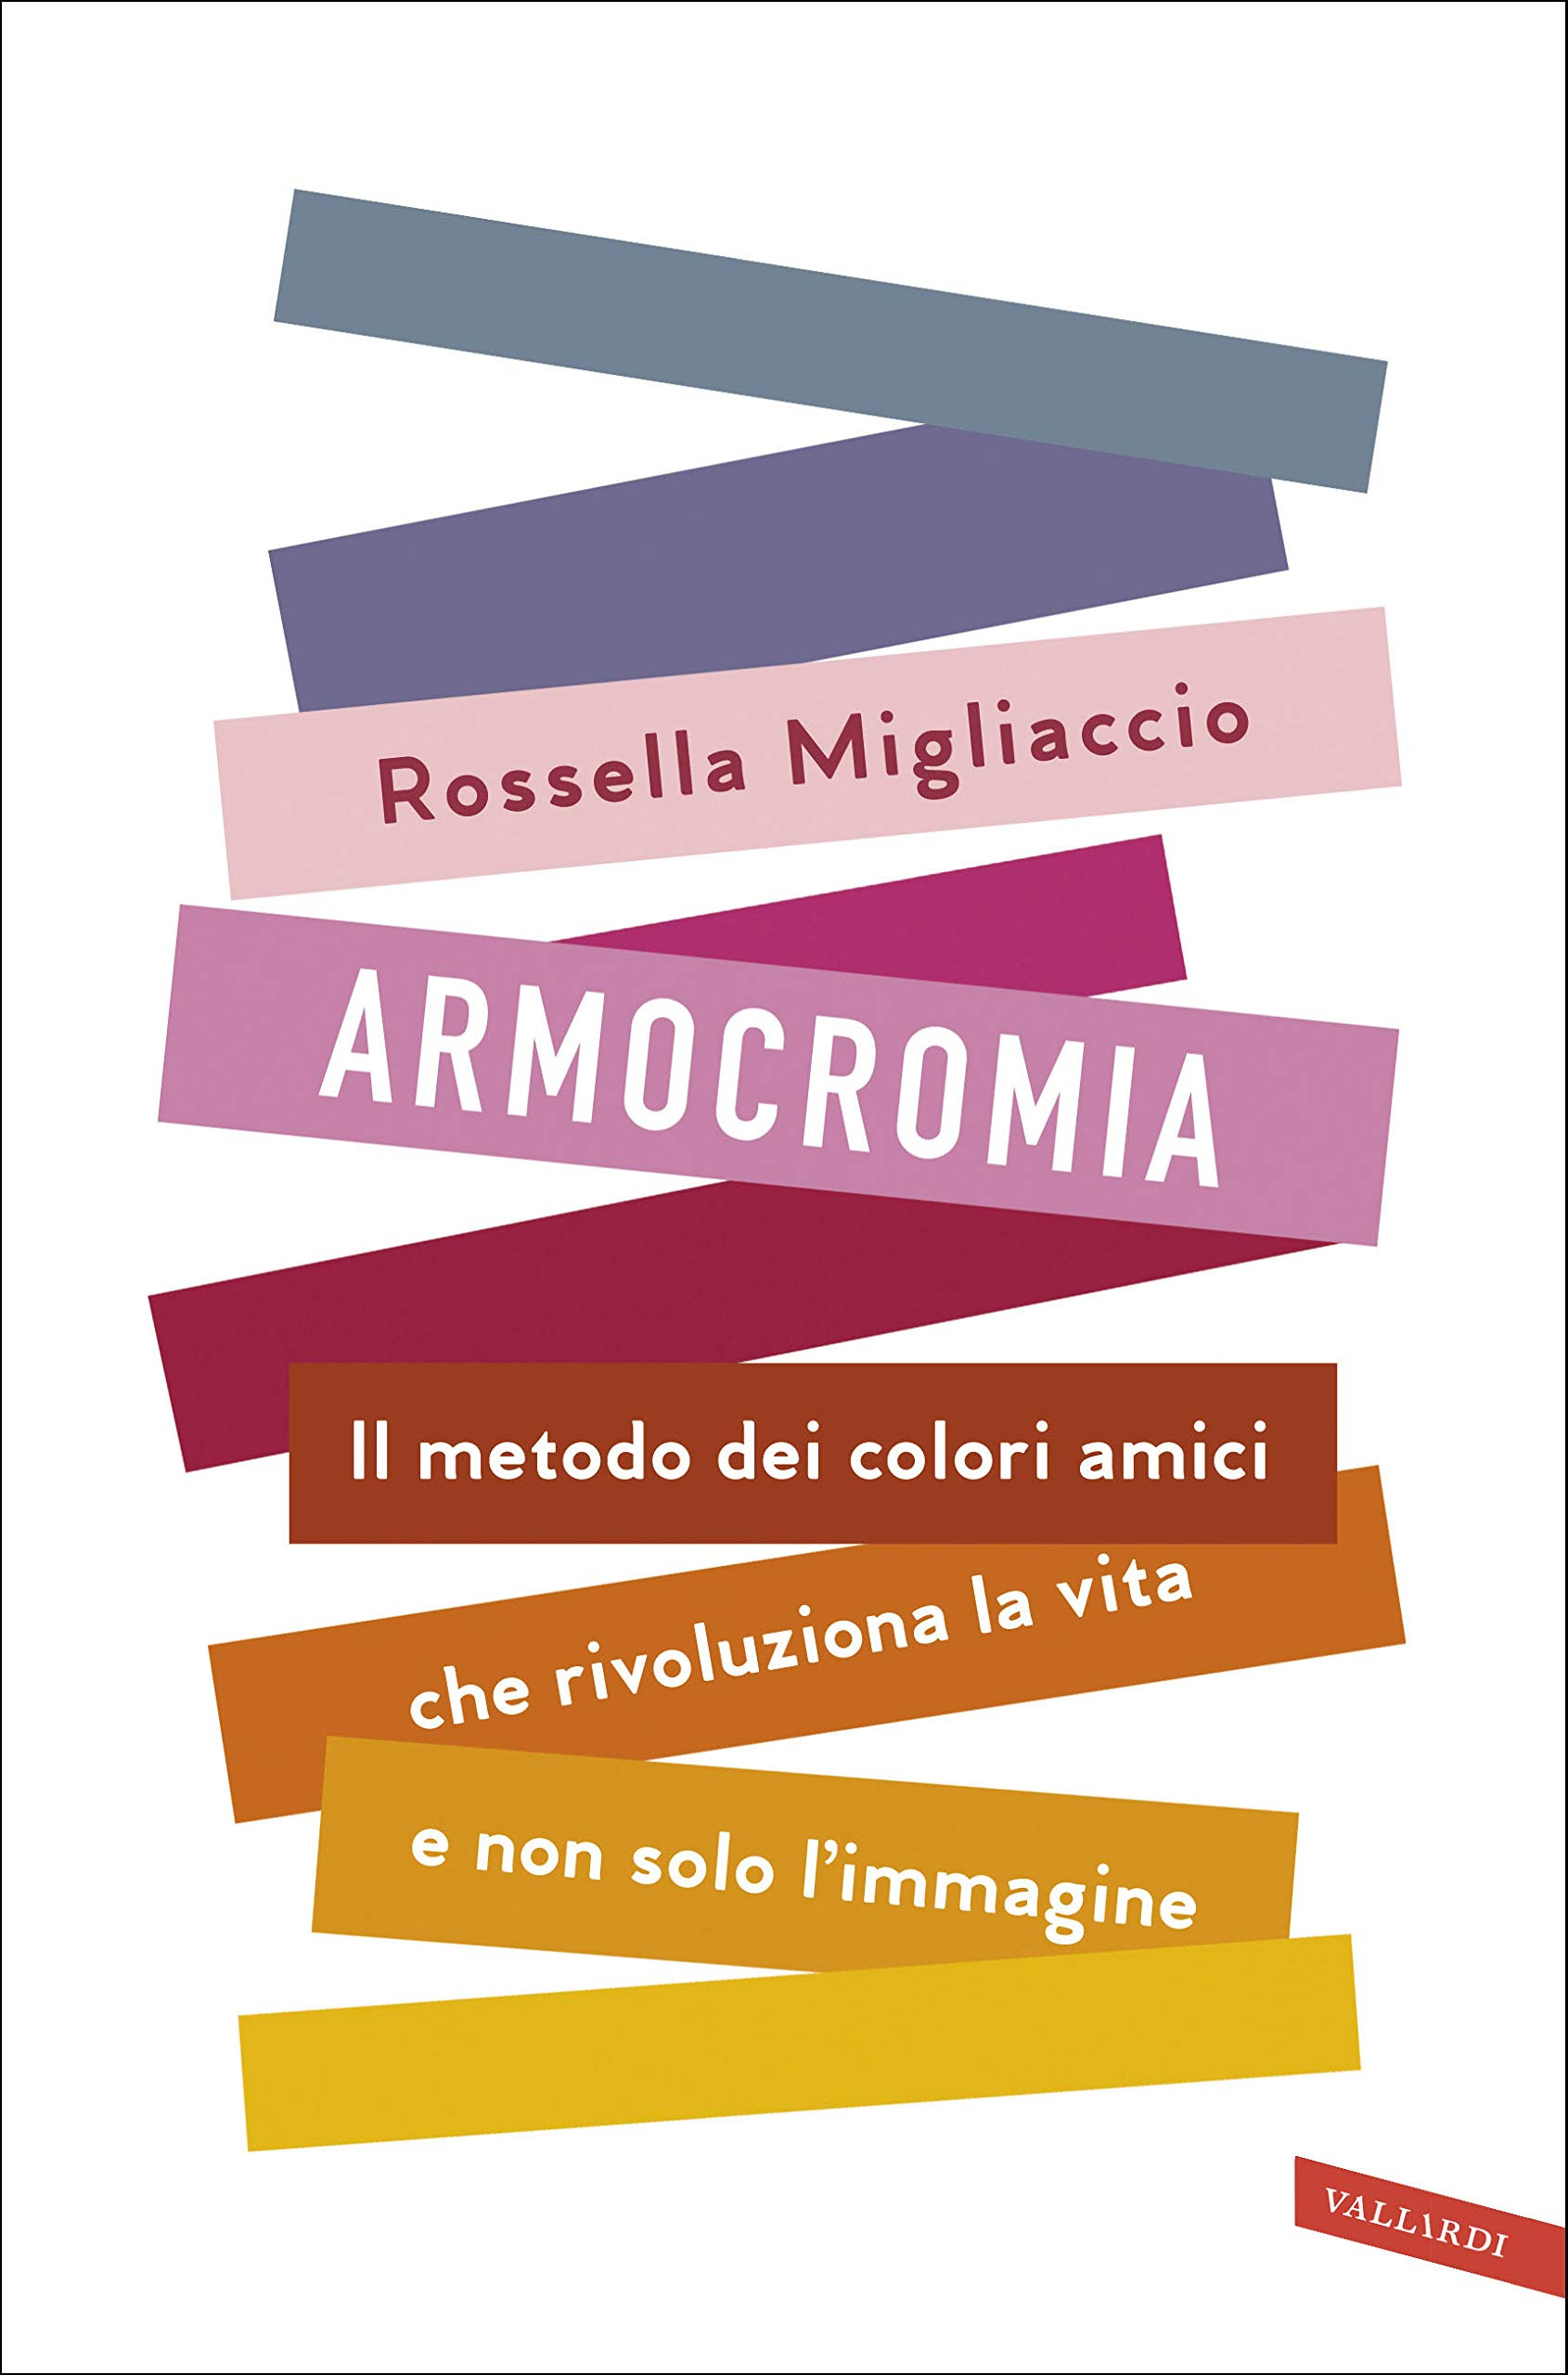 Armocromia. Il metodo dei colori amici che rivoluziona la vita e non solo l'immagine in Kindle/PDF/EPUB